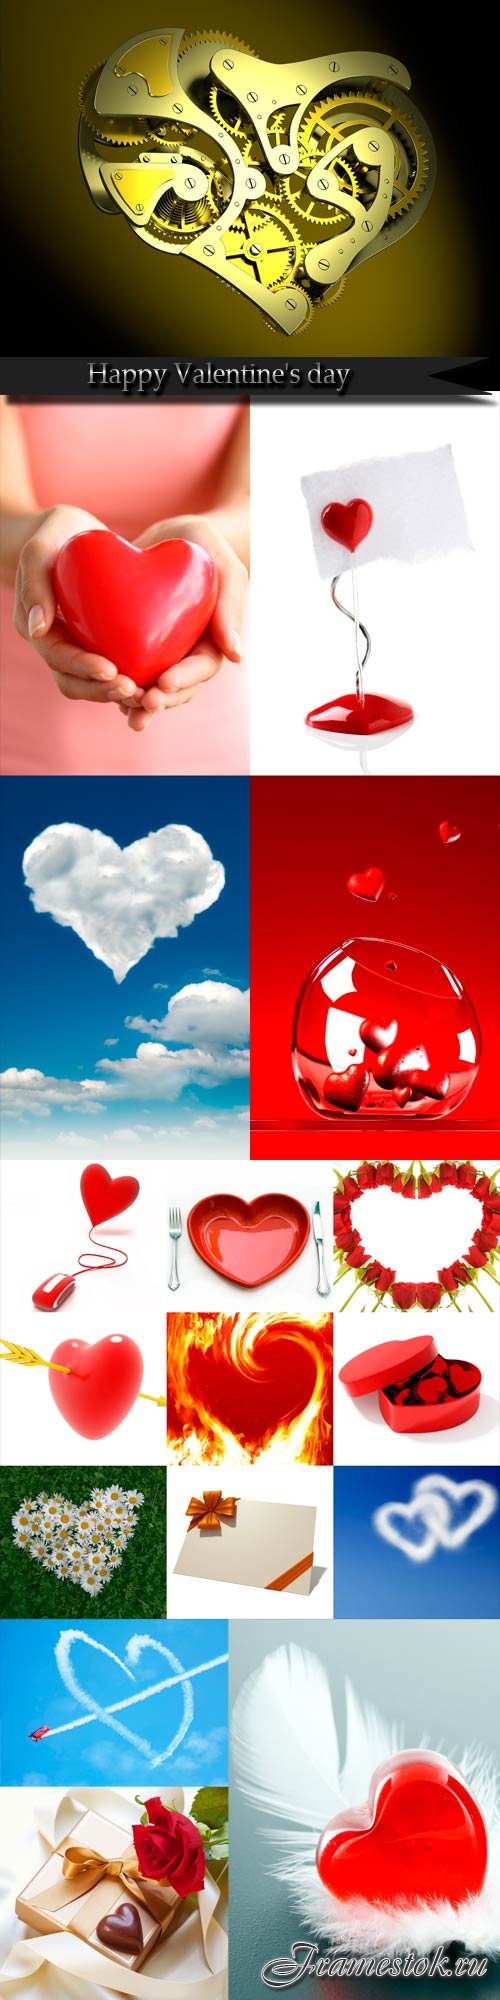 Happy Valentine's day raster graphics